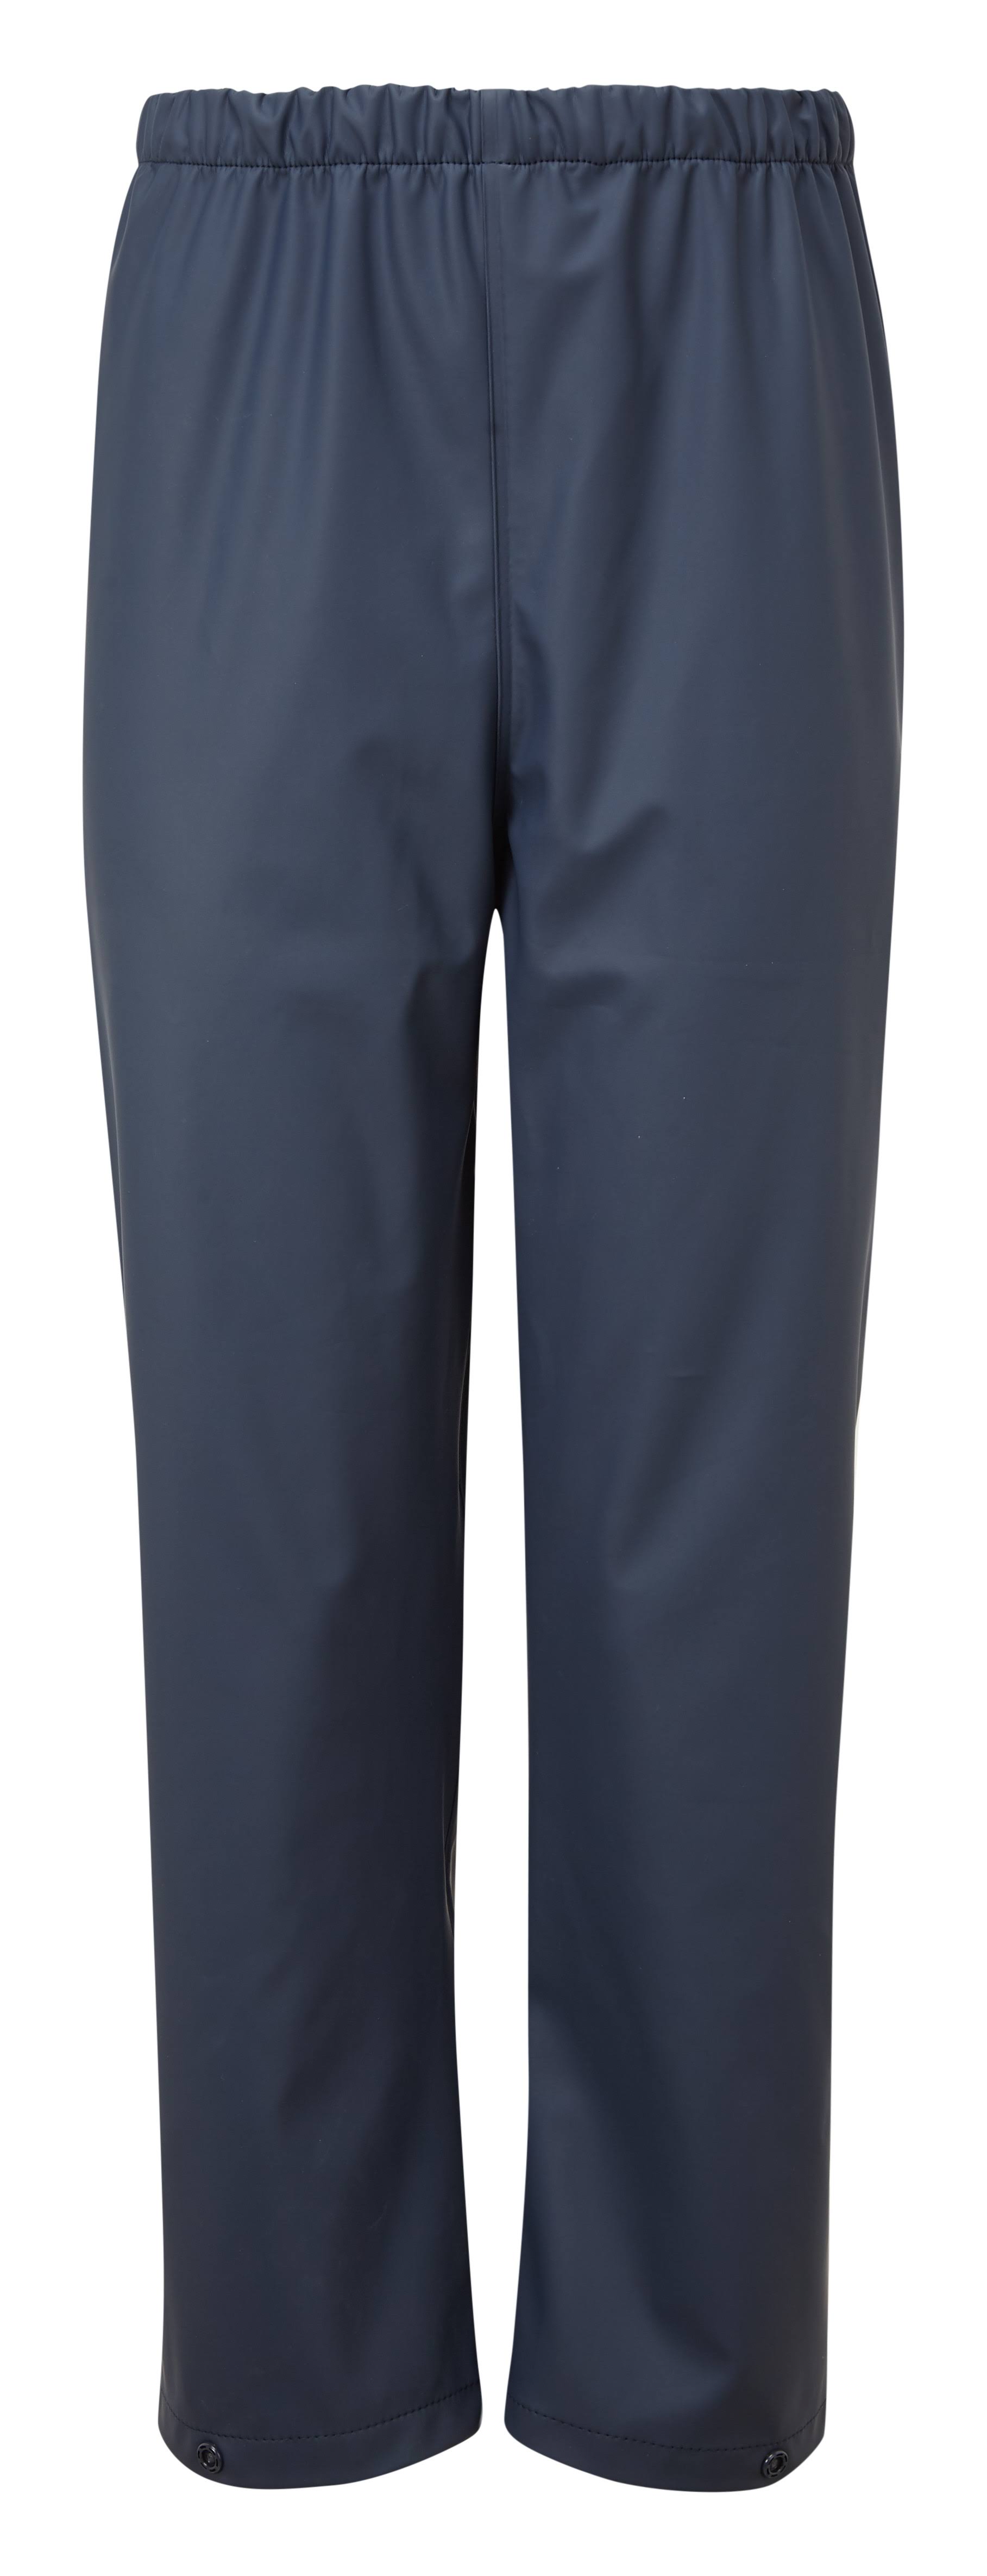 Fort 983 Splashflex Childs Trousers Navy Blue - 7-8 - Best Workwear